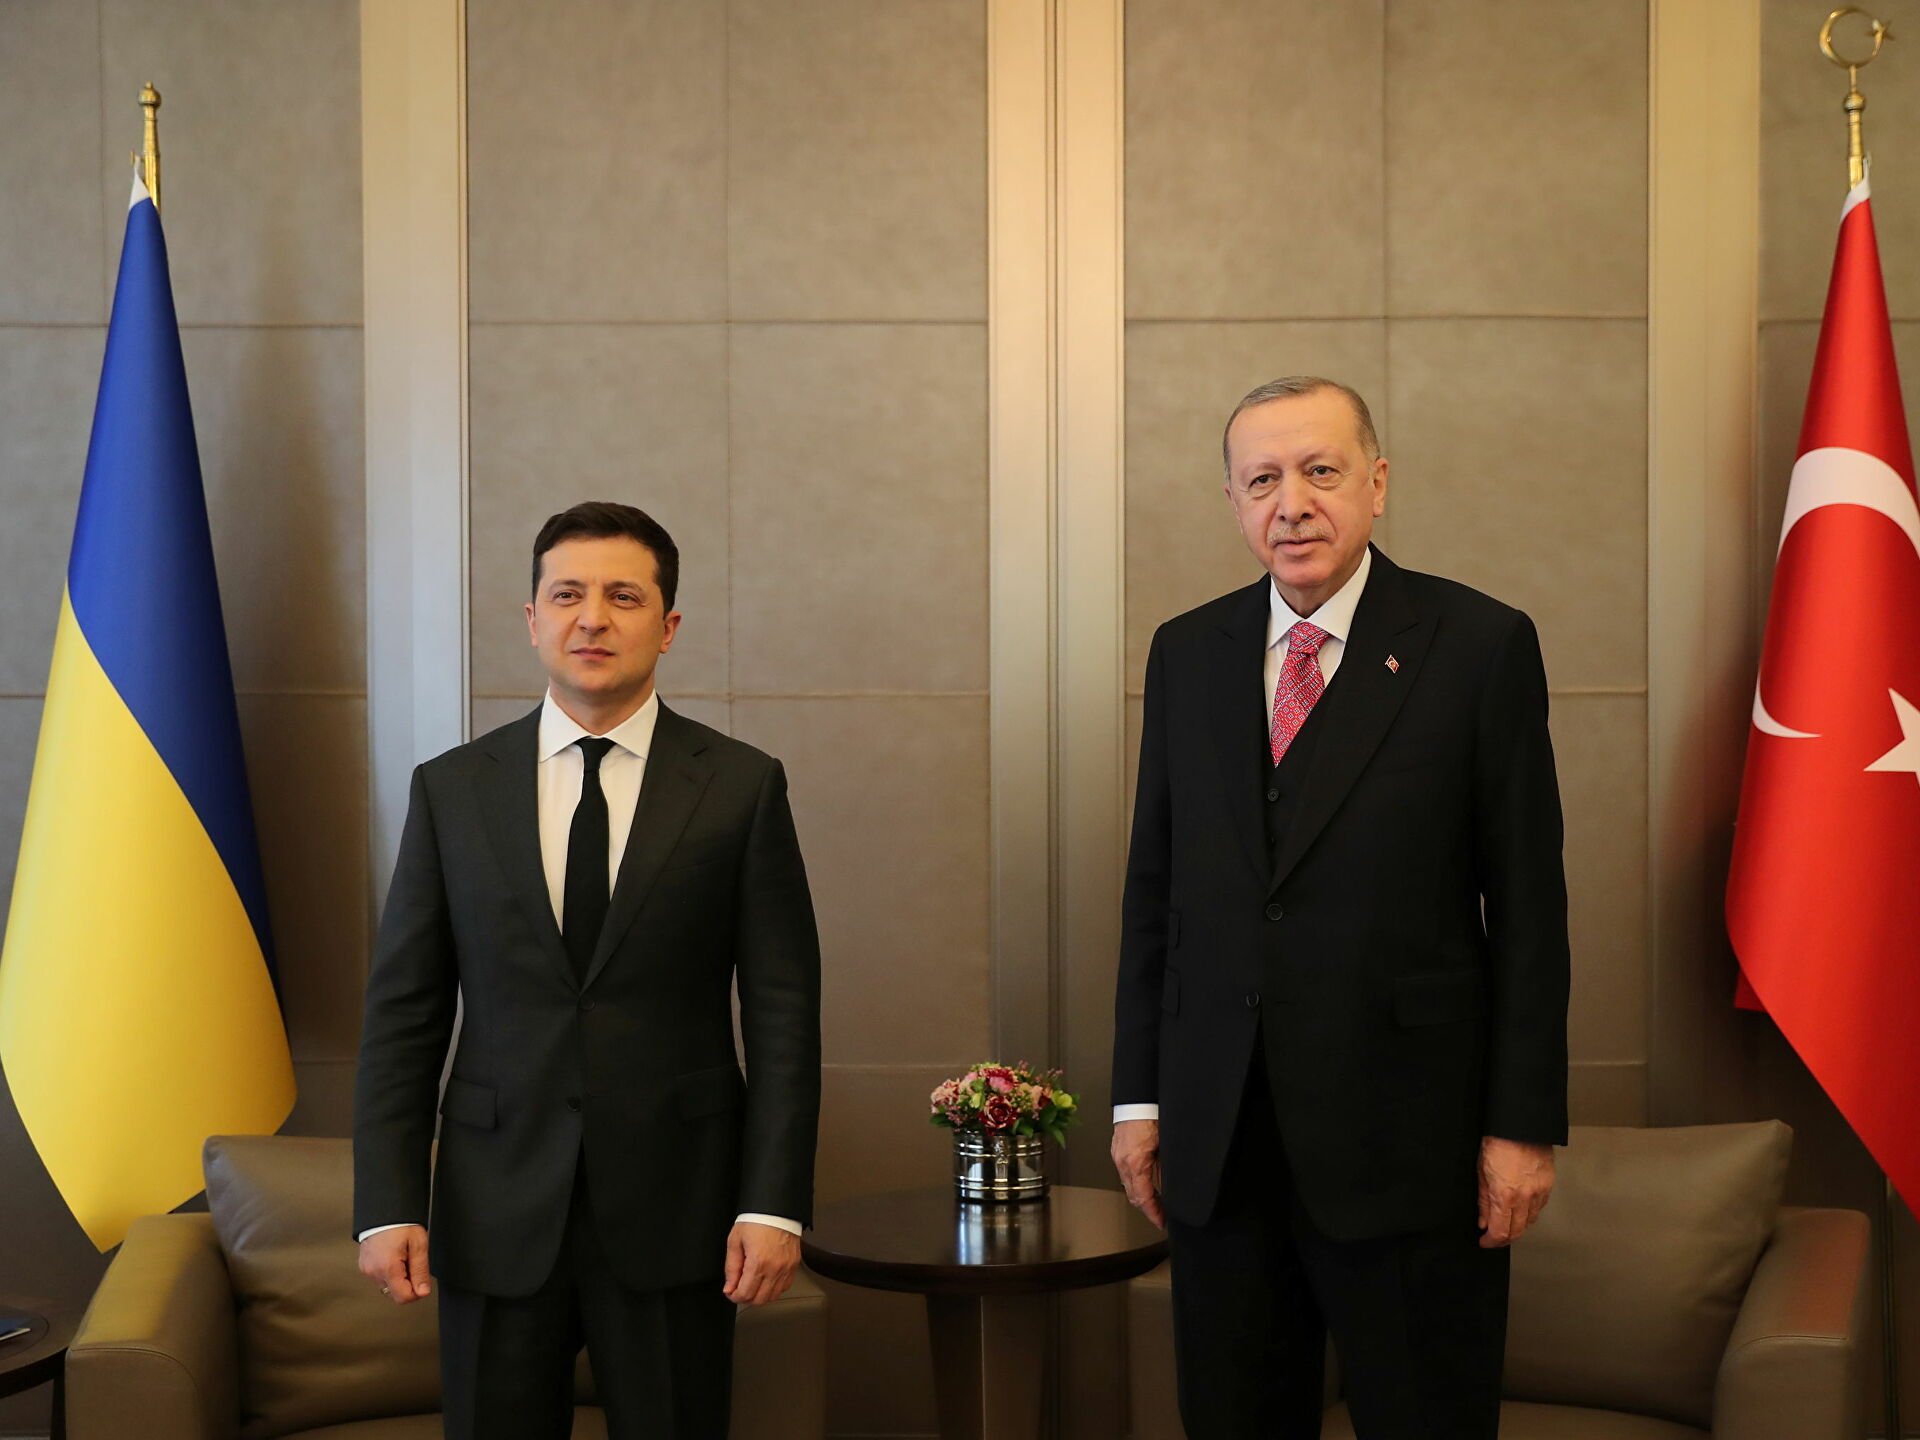  Erdogan vizitează Ucraina sperând să joace rol de mediator cu Rusia